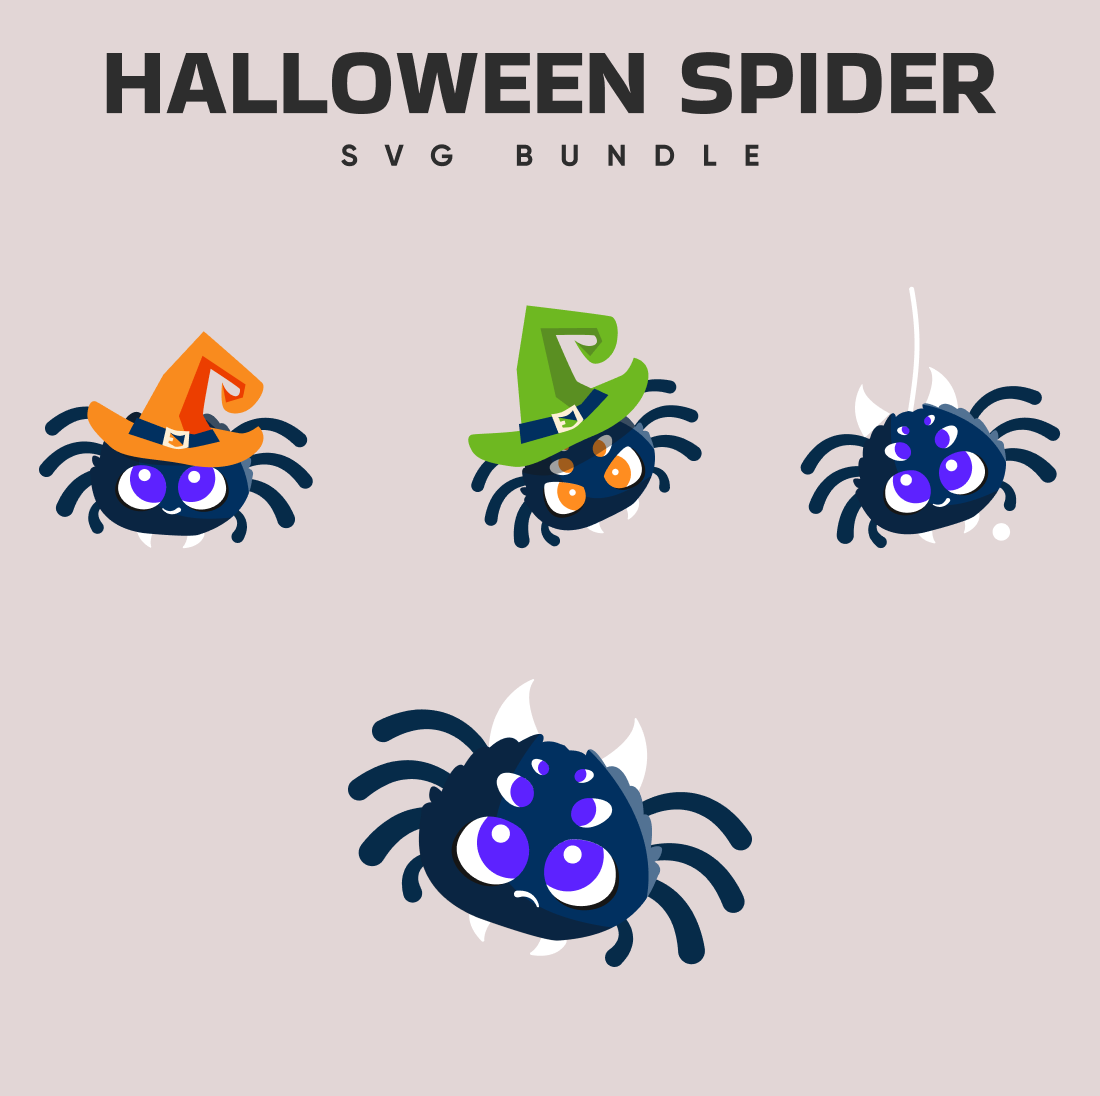 Halloween spider svg bundle.